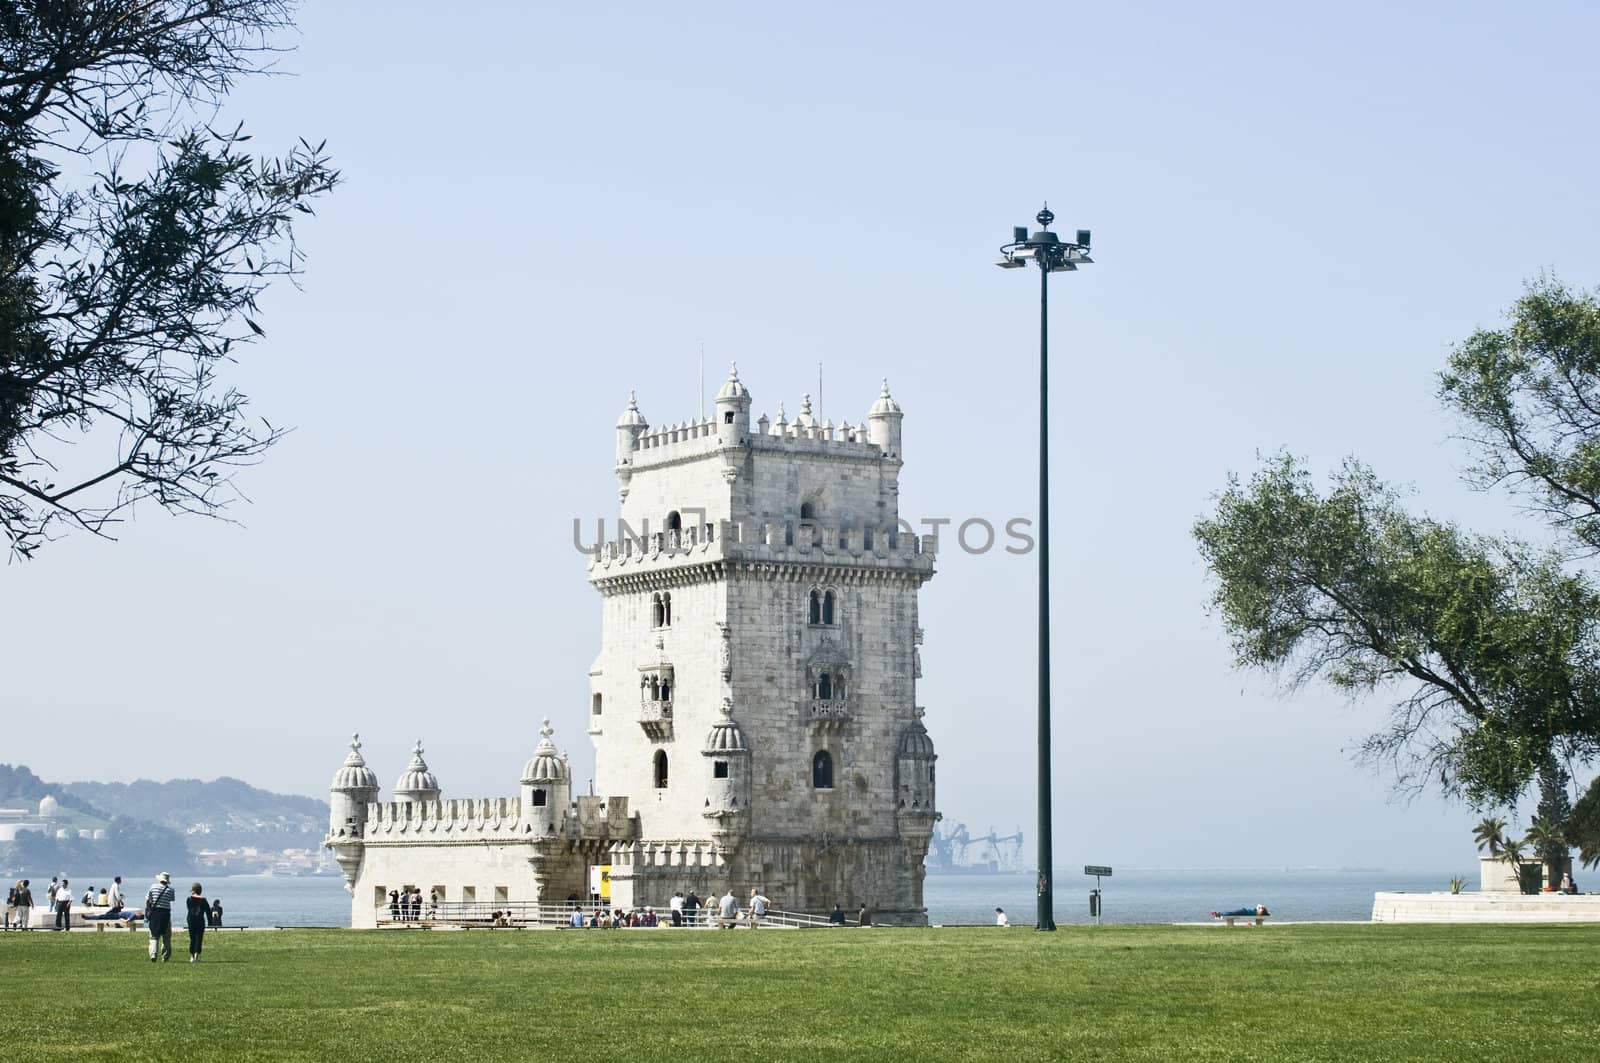 Tower of Belem (Torre de Belem), Lisbon, Portugal by mrfotos